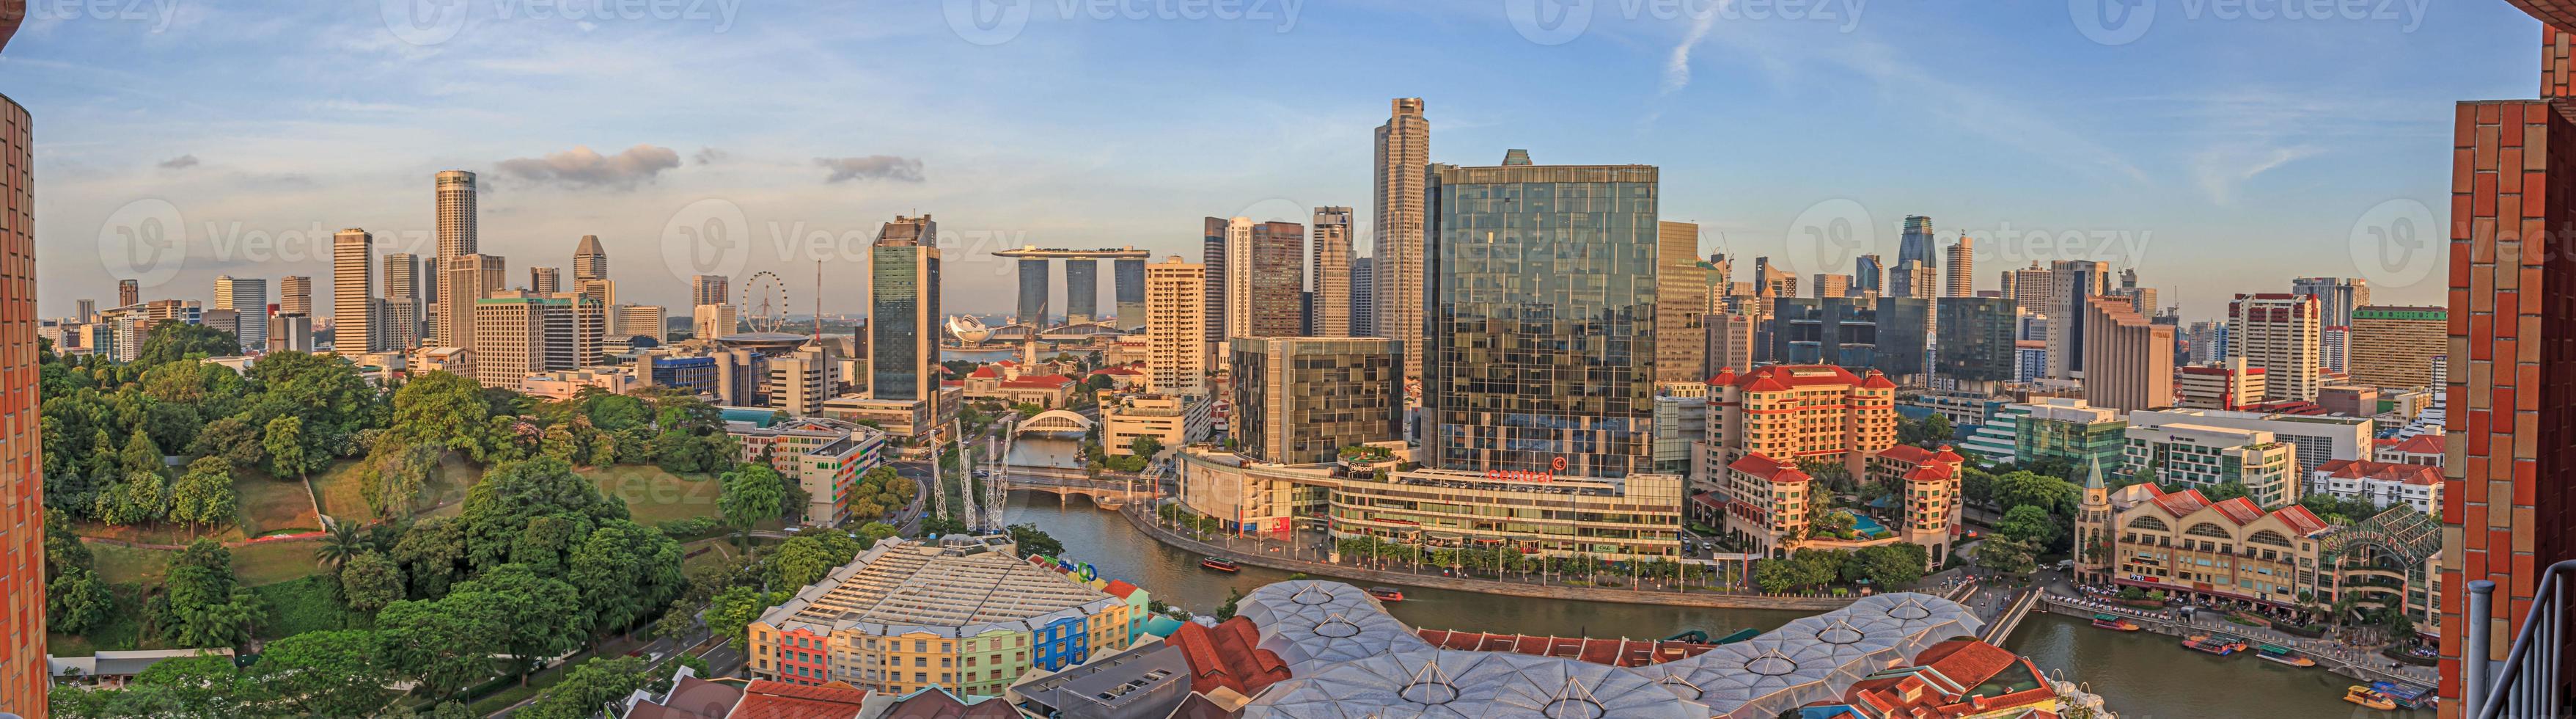 vista panorâmica panorâmica do horizonte de singapura e do distrito de entretenimento de clarke quay foto